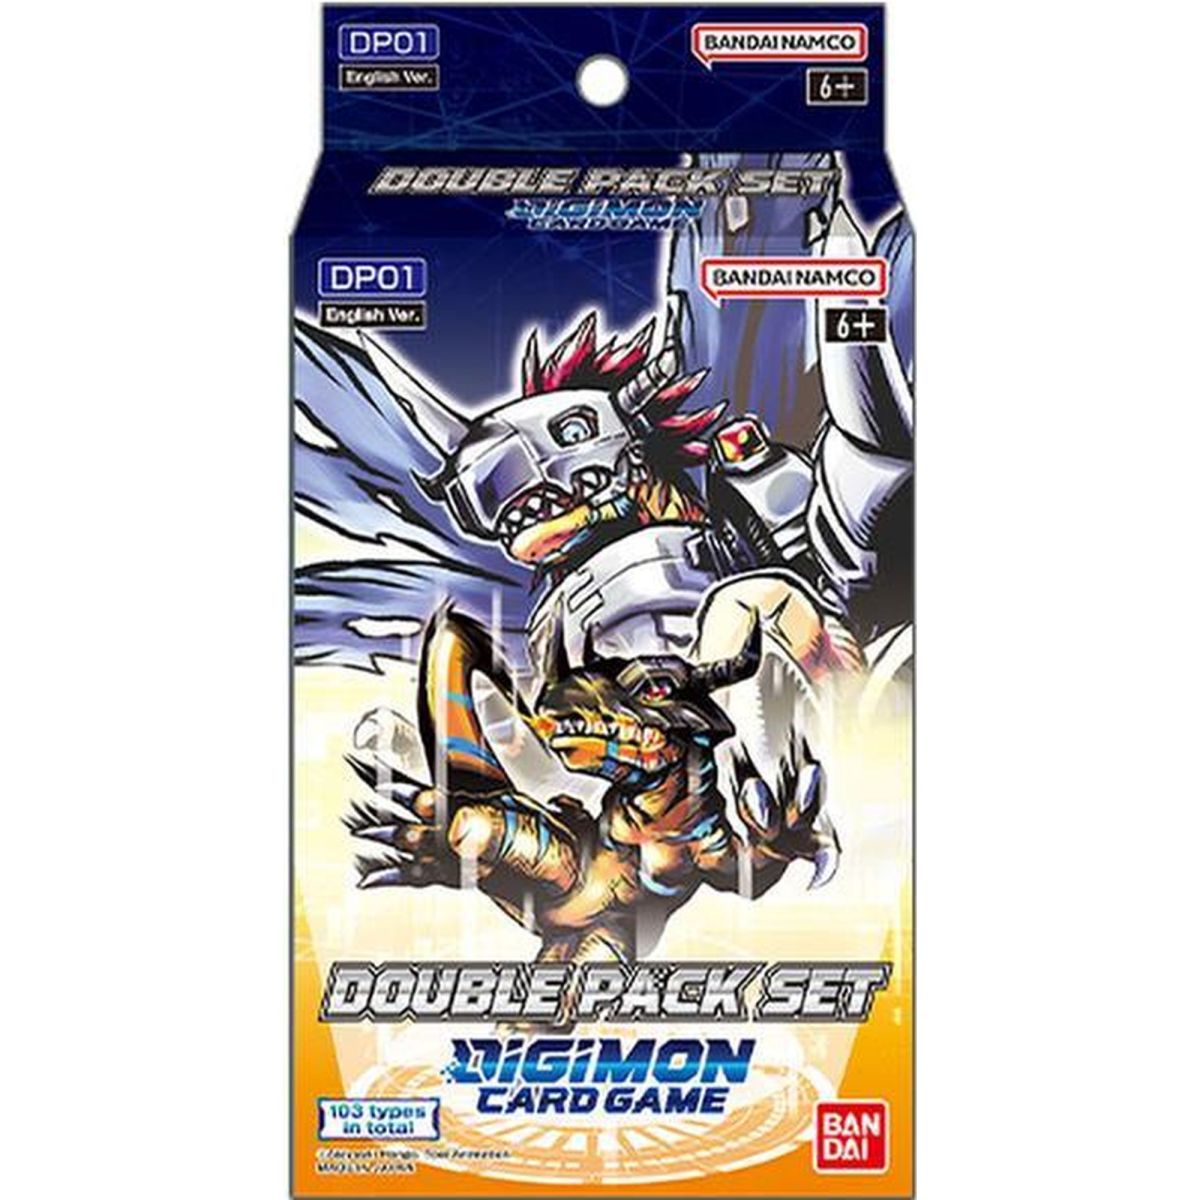 Digimon Card Game - Coffret - Double Pack Set - DP01 vol.1 - EN